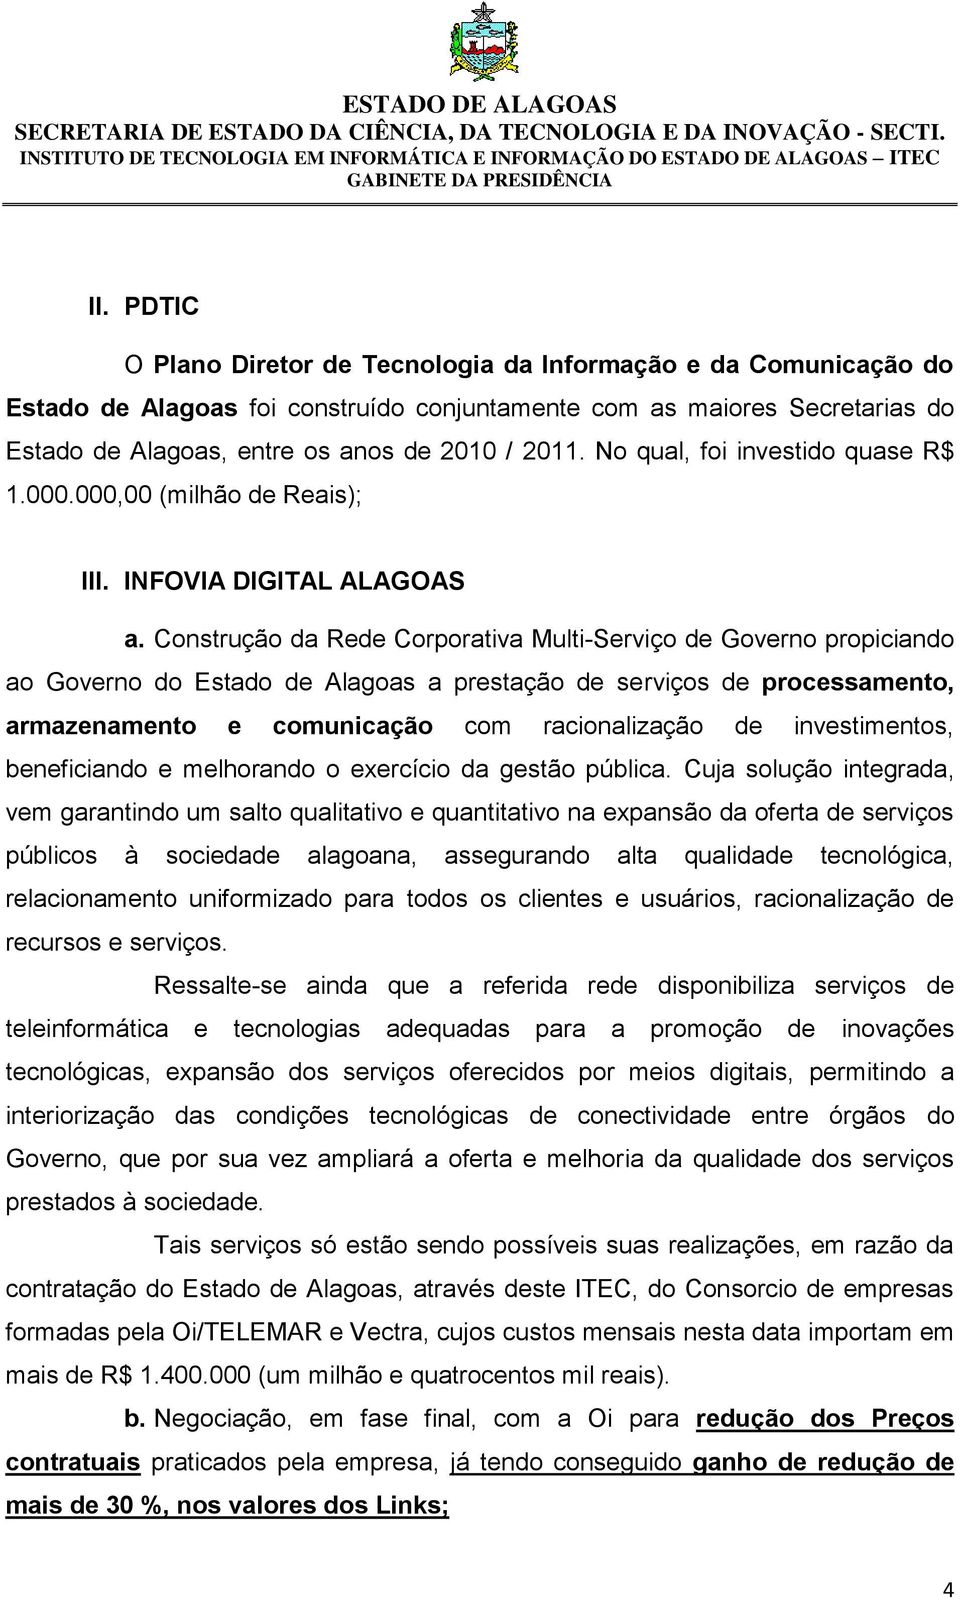 Construção da Rede Corporativa Multi-Serviço de Governo propiciando ao Governo do Estado de Alagoas a prestação de serviços de processamento, armazenamento e comunicação com racionalização de